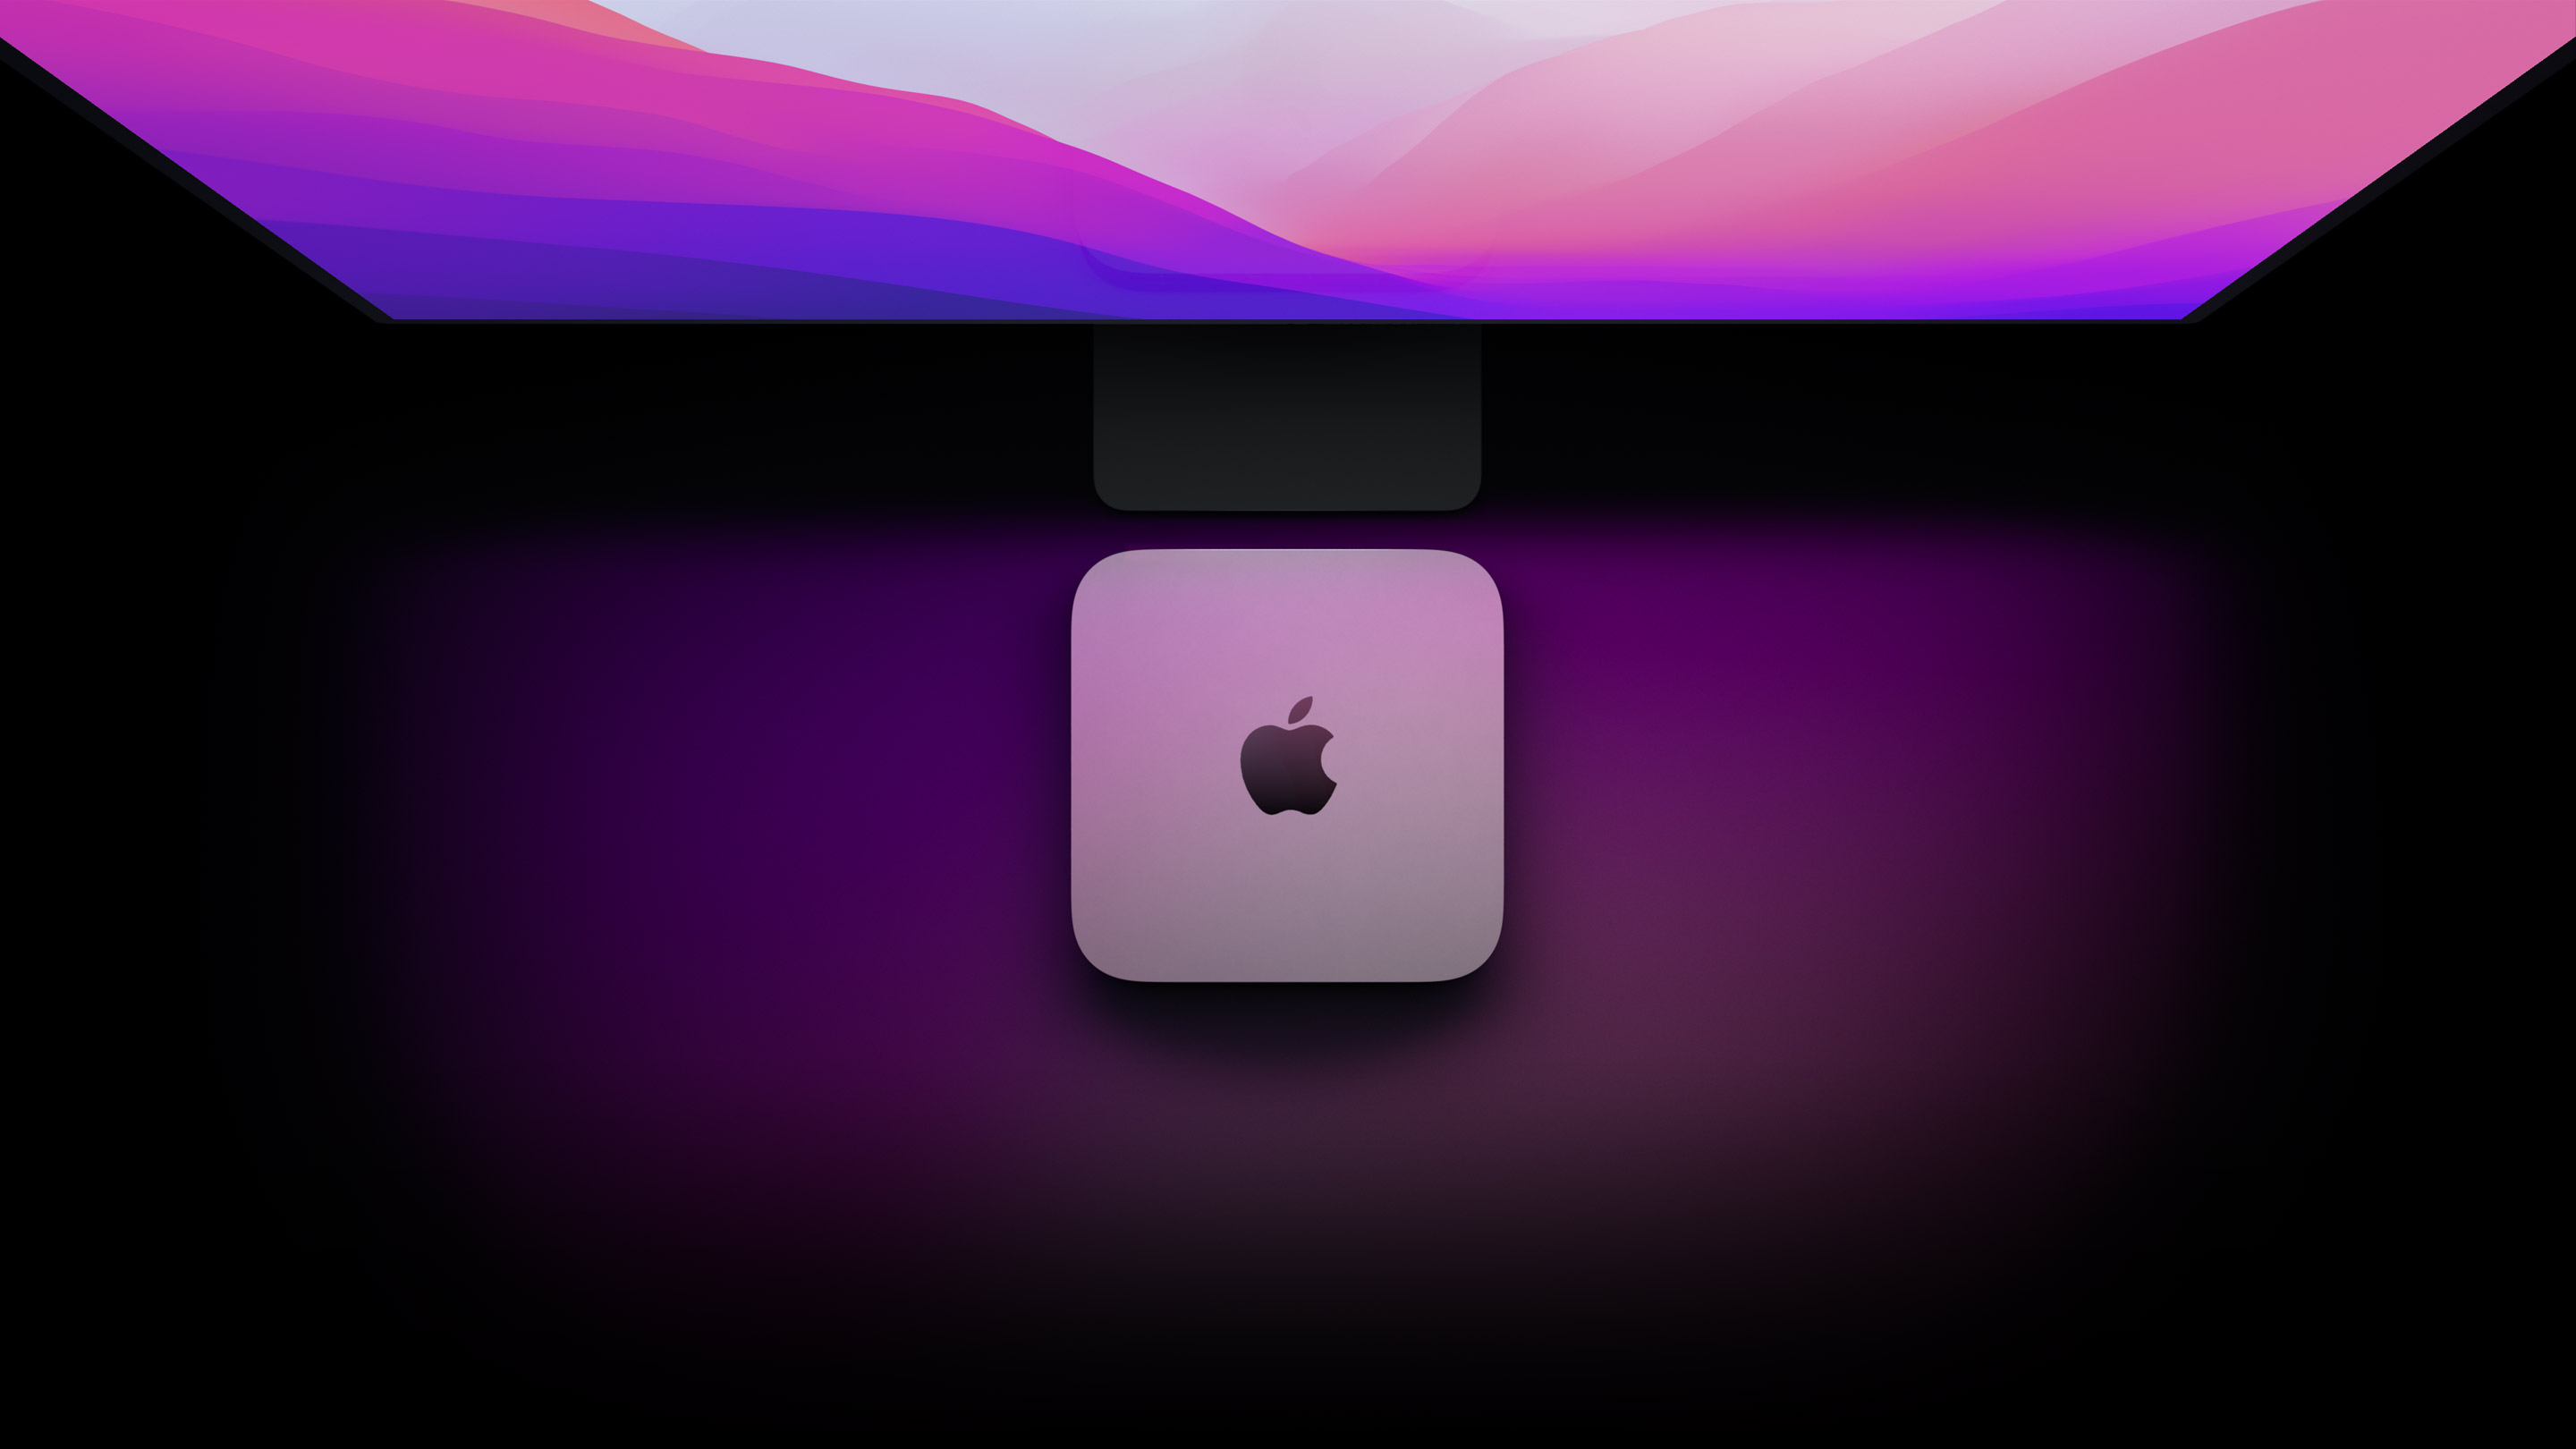 apple mac mini 2012 max hdmi resolution